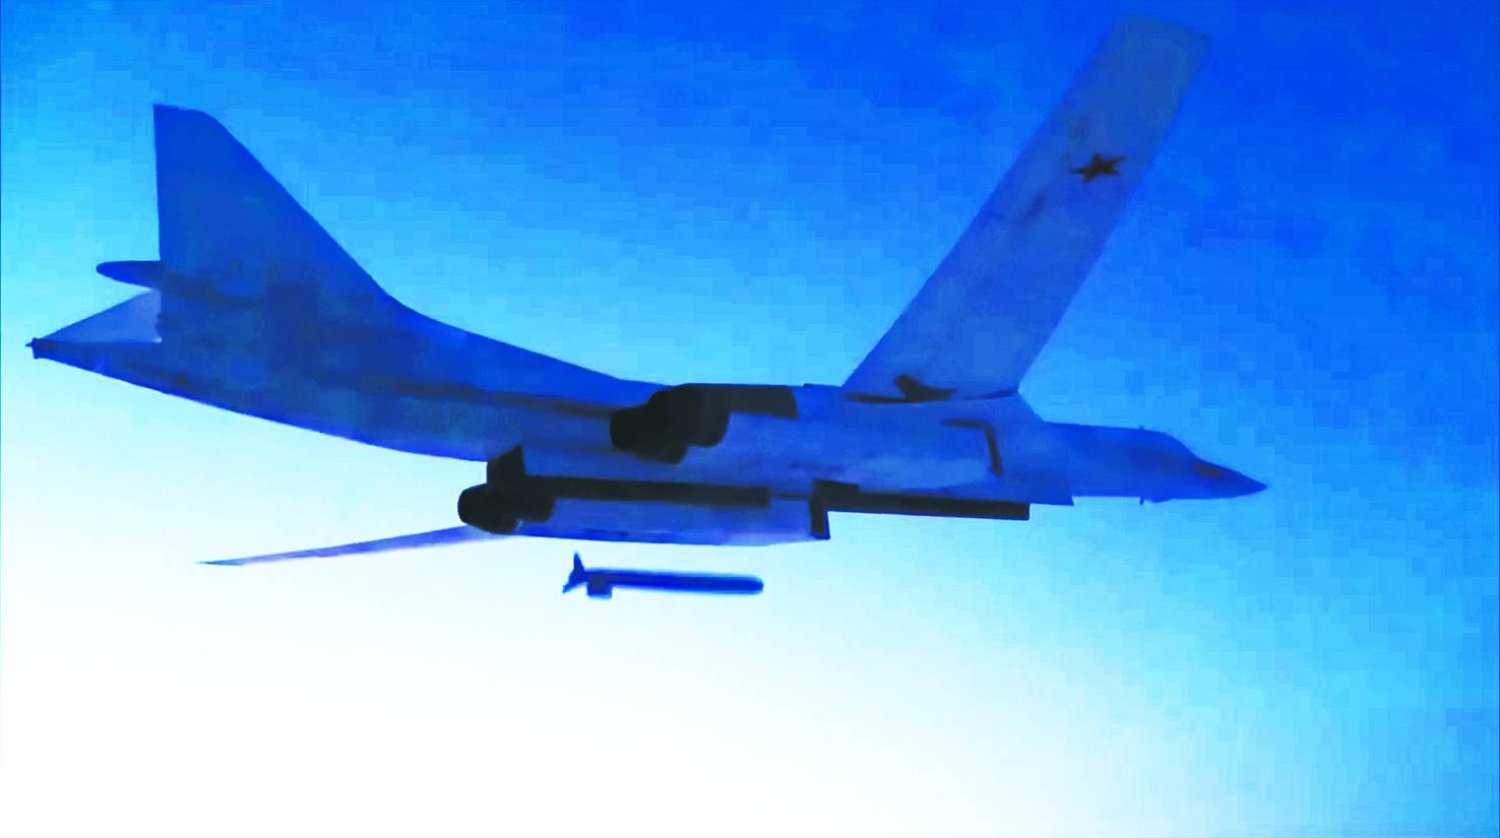 
صورة من شريط فيديو وزعته وزارة الدفاع الروسية لقاذفة بعيدة المدى من طراز «تي يو - 160» الاستراتيجية تُطلق صاروخ كروز خلال تدريبات (أرشيفية - أ.ب)